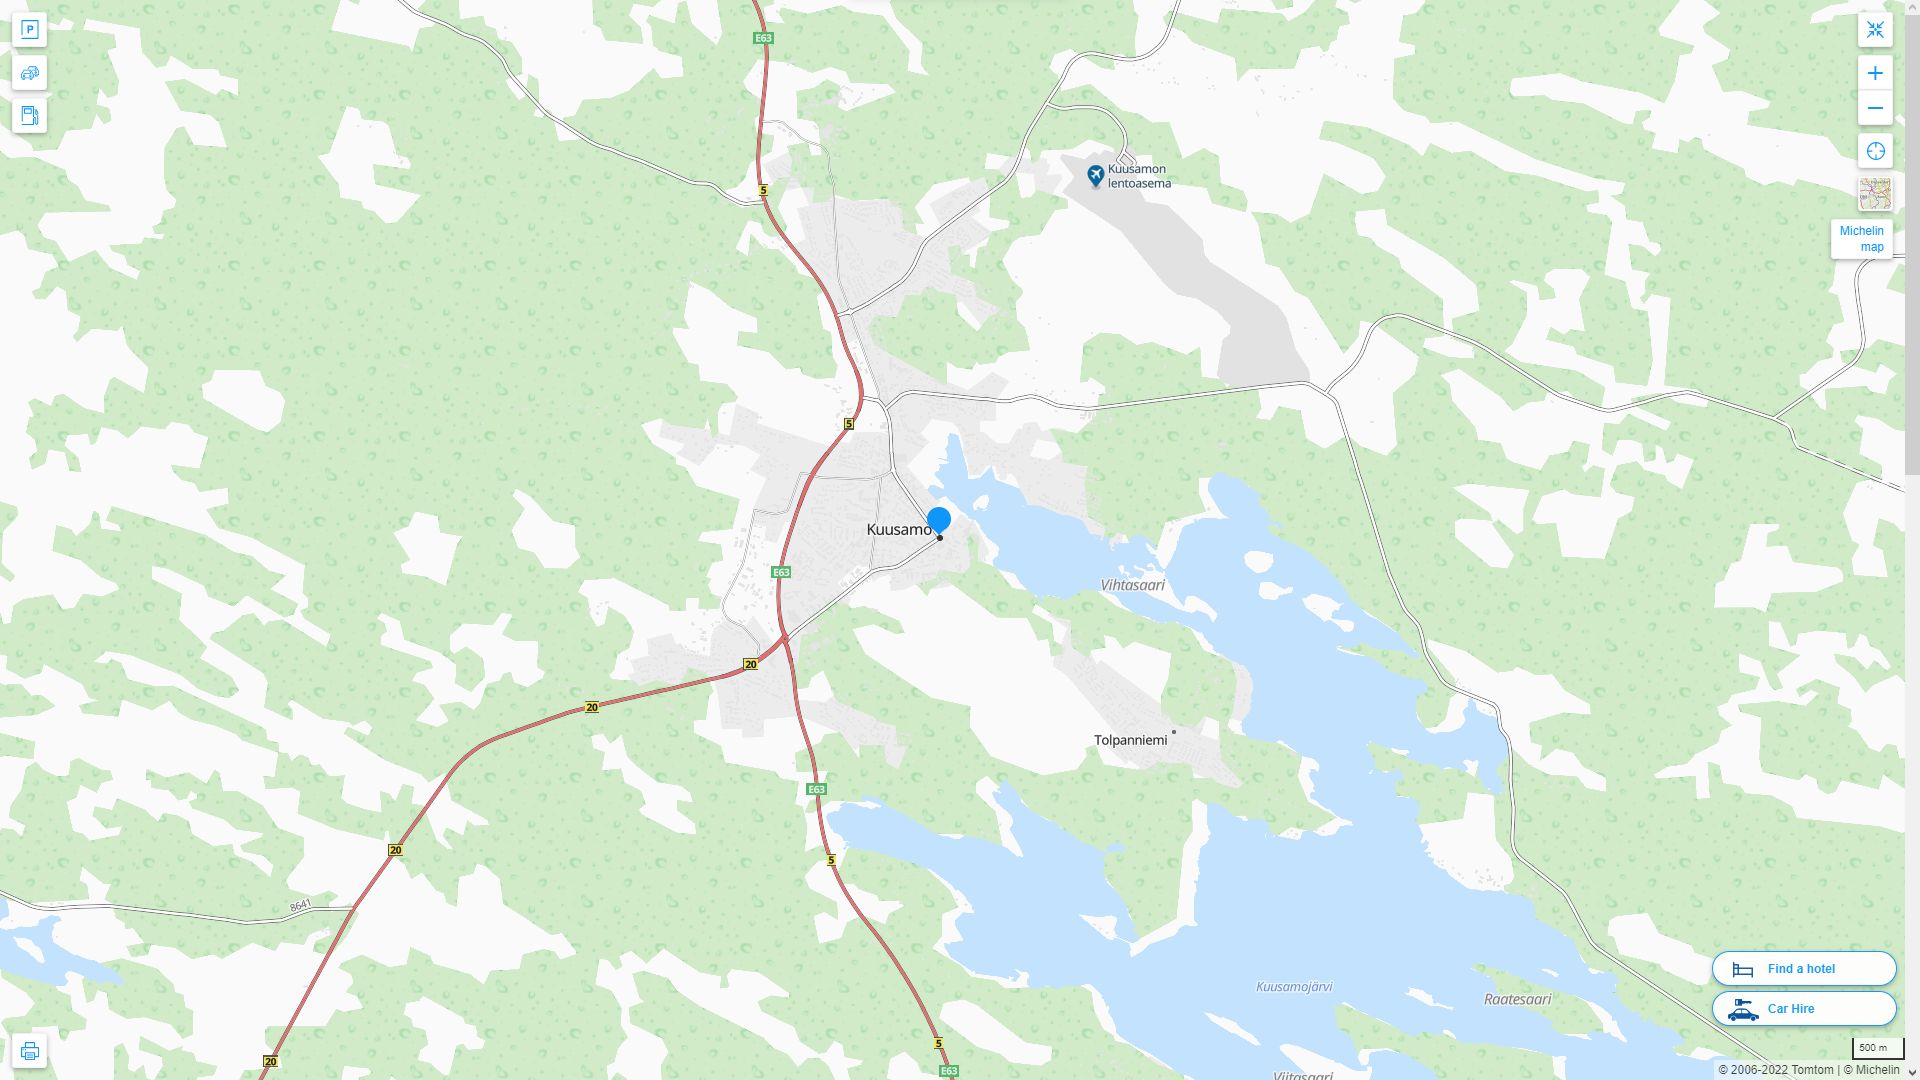 Kuusamo Finlande Autoroute et carte routiere